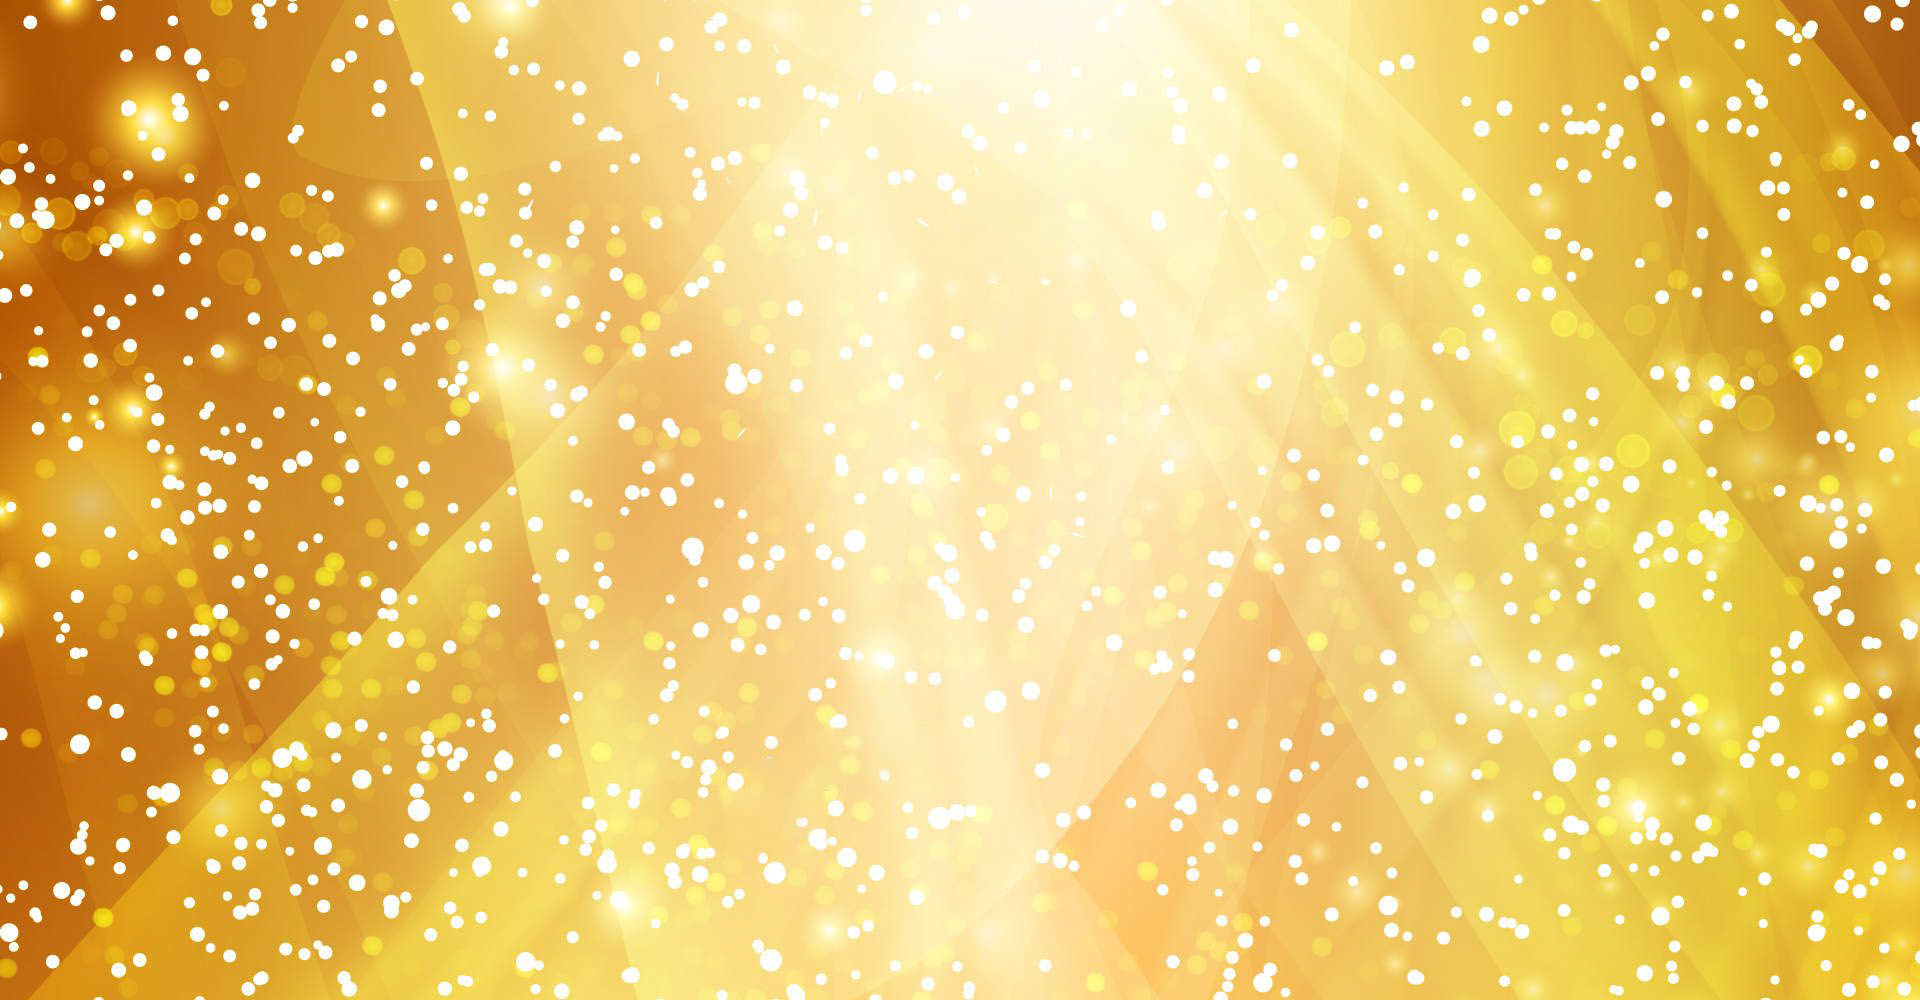 Hình nền Nền Vàng Dải Sóng Màu Xanh đồng Và Khung Viền Vàng Sang Trọng  Vectơ Nền Vàng Dải Sóng Màu Xanh đồng Viền Vàng Sang Trọng Background  Vector để tải xuống